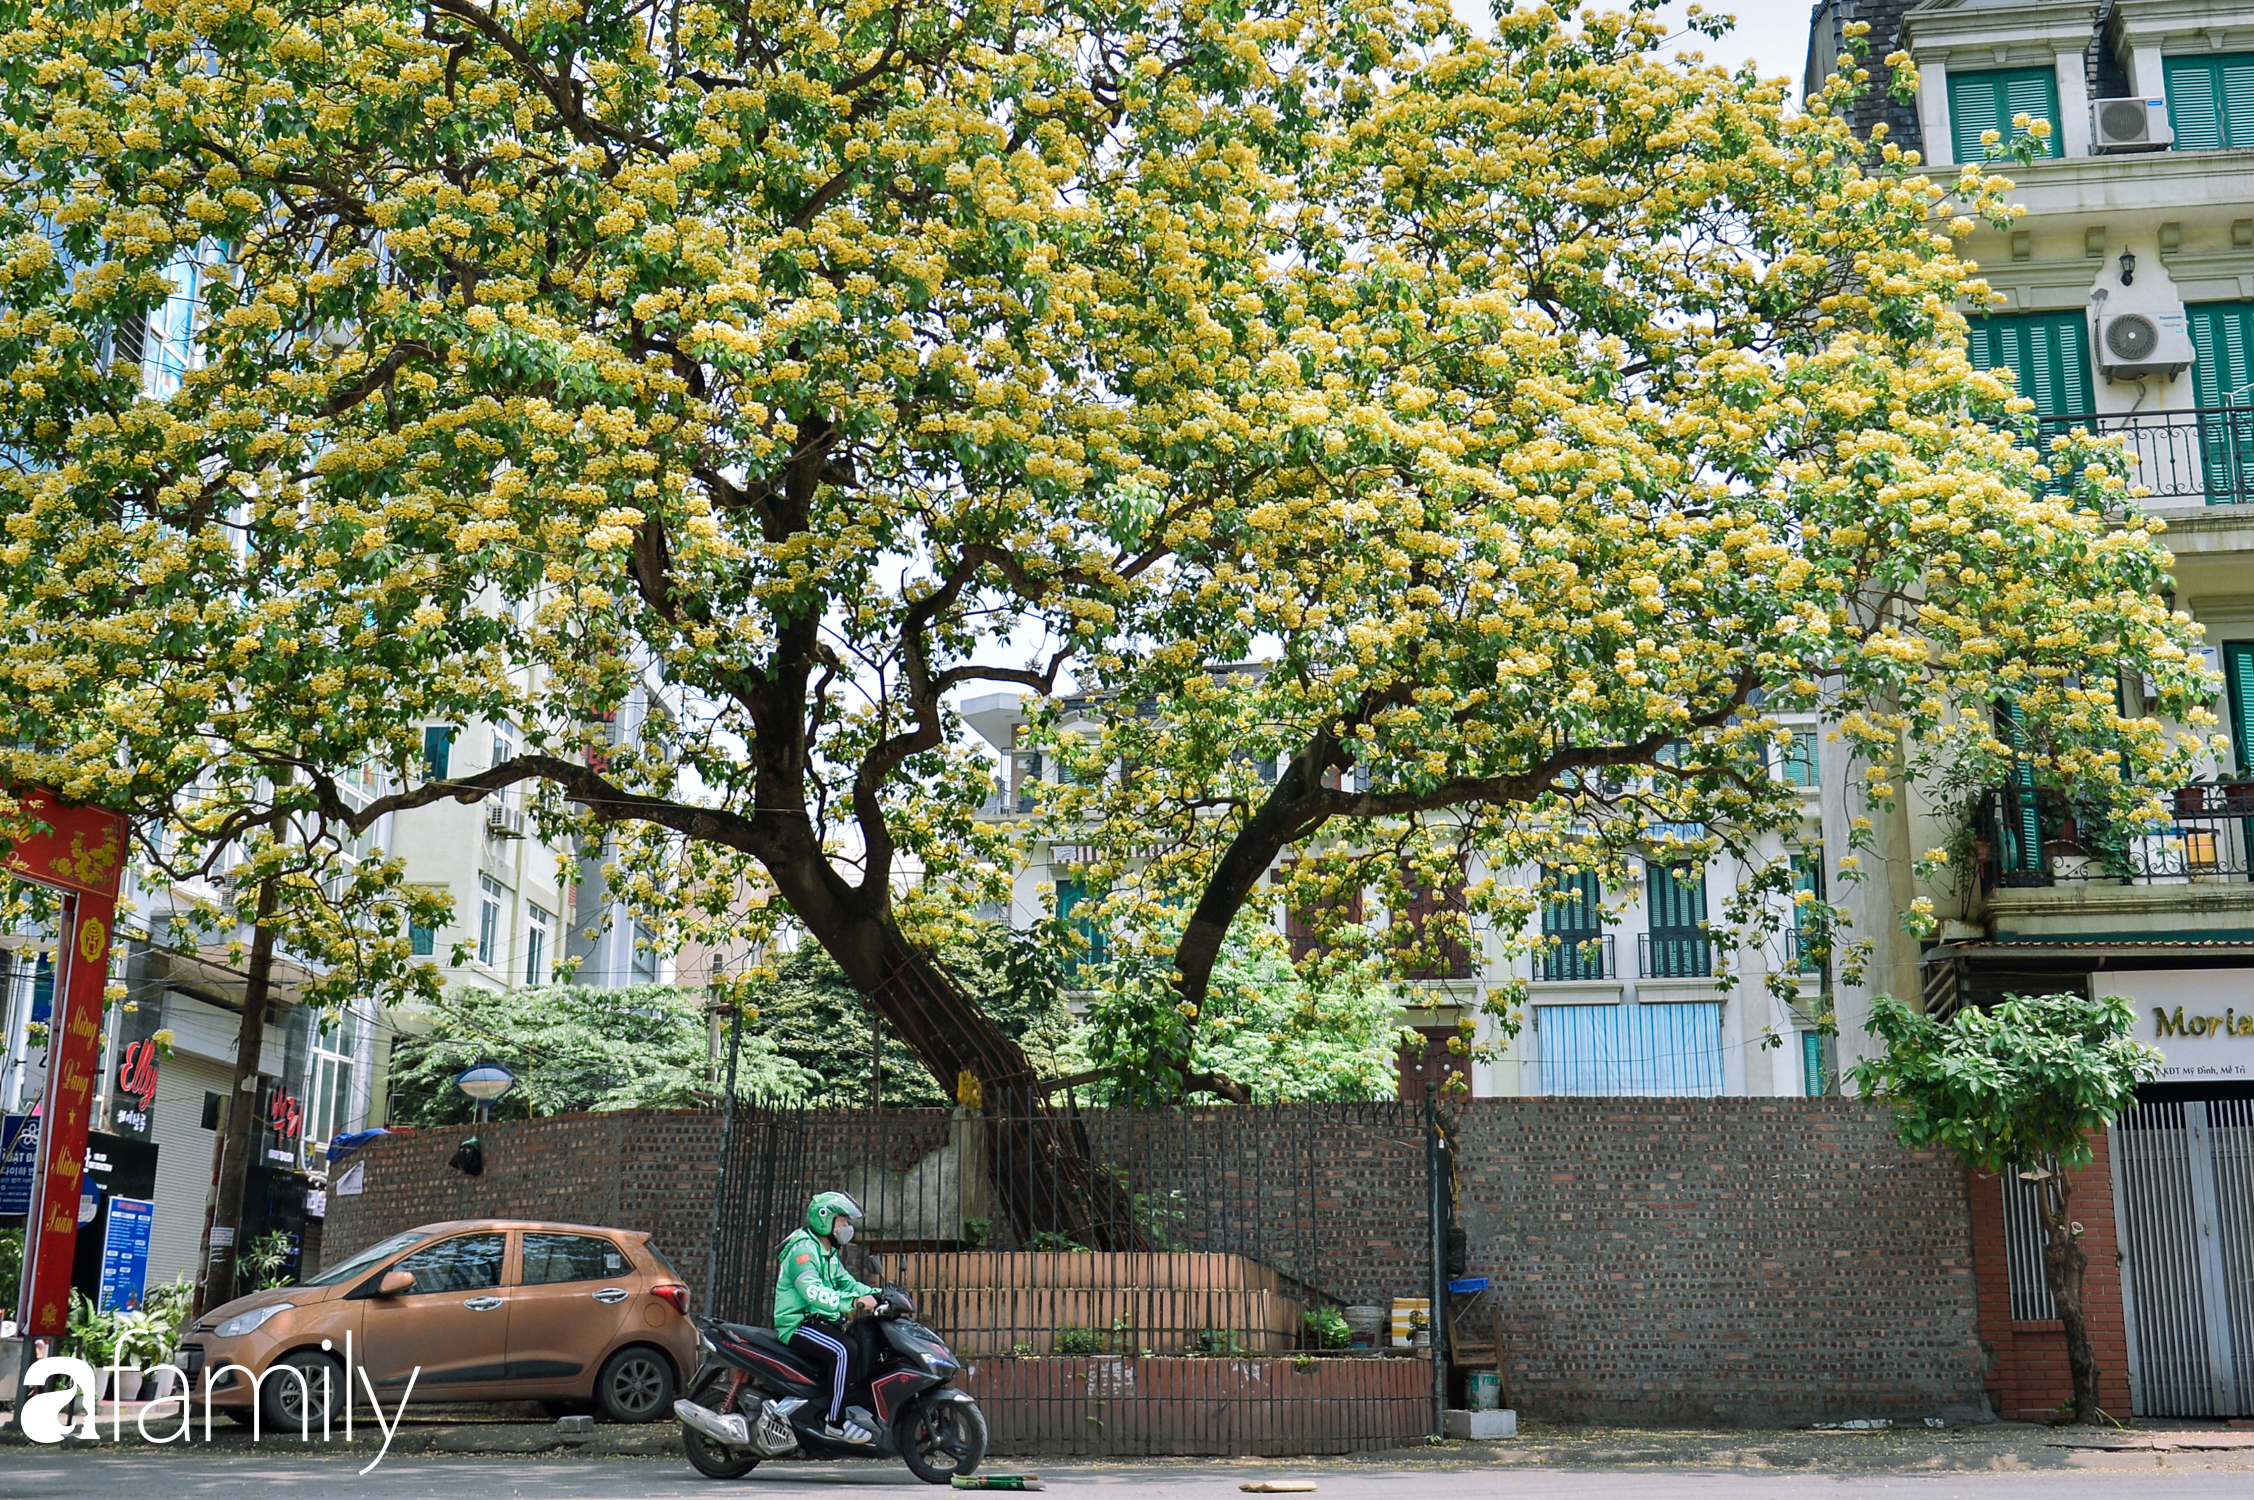 Đứng lặng trước vẻ đẹp của cây hoa bún duy nhất tại Hà Nội, làm "bảo vật" cho làng cổ suốt 300 năm hiếm nơi đâu có được - Ảnh 4.